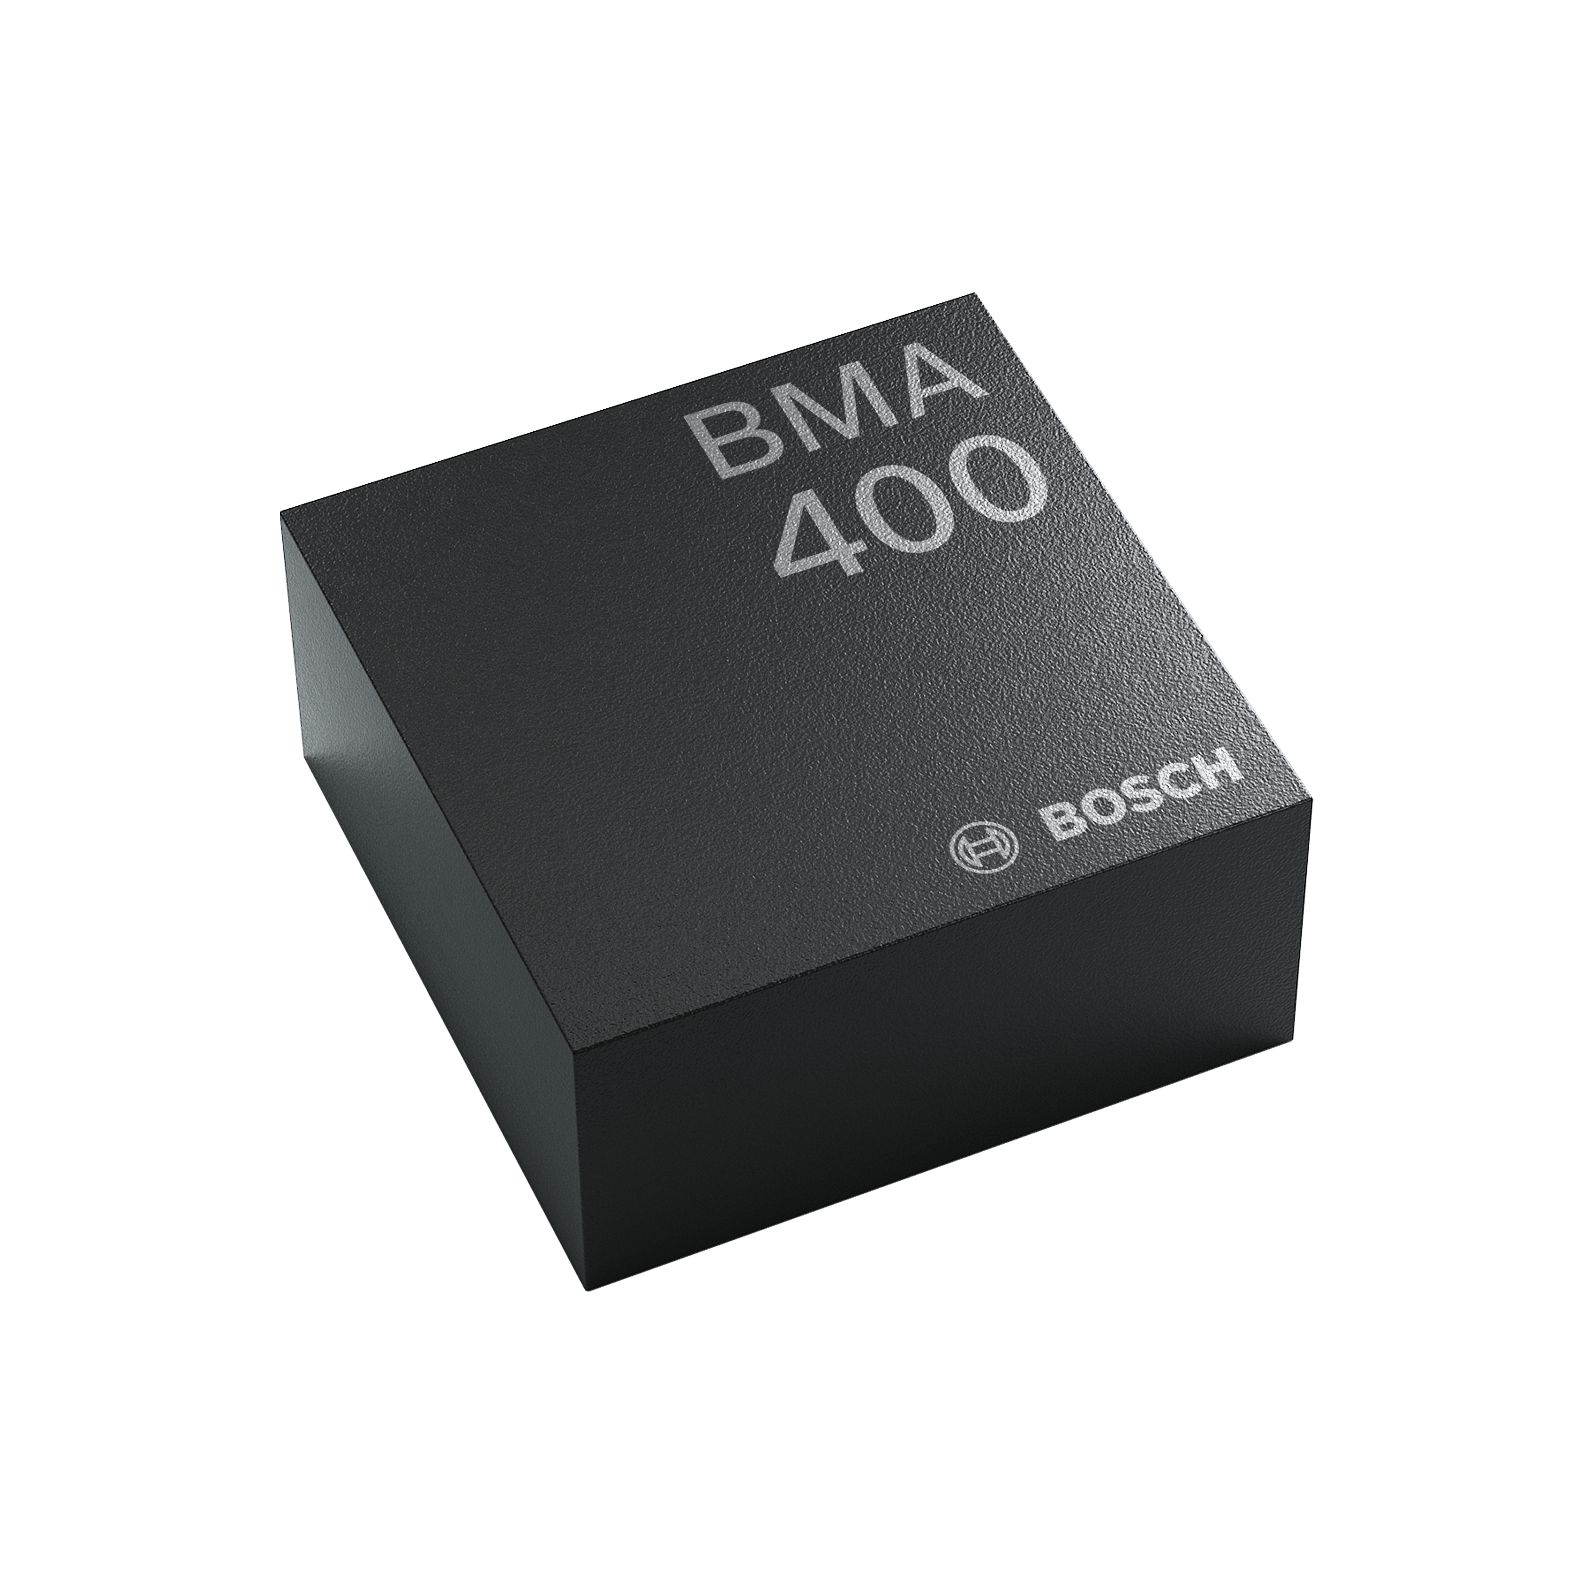 BMA400 - Acceleration Sensors